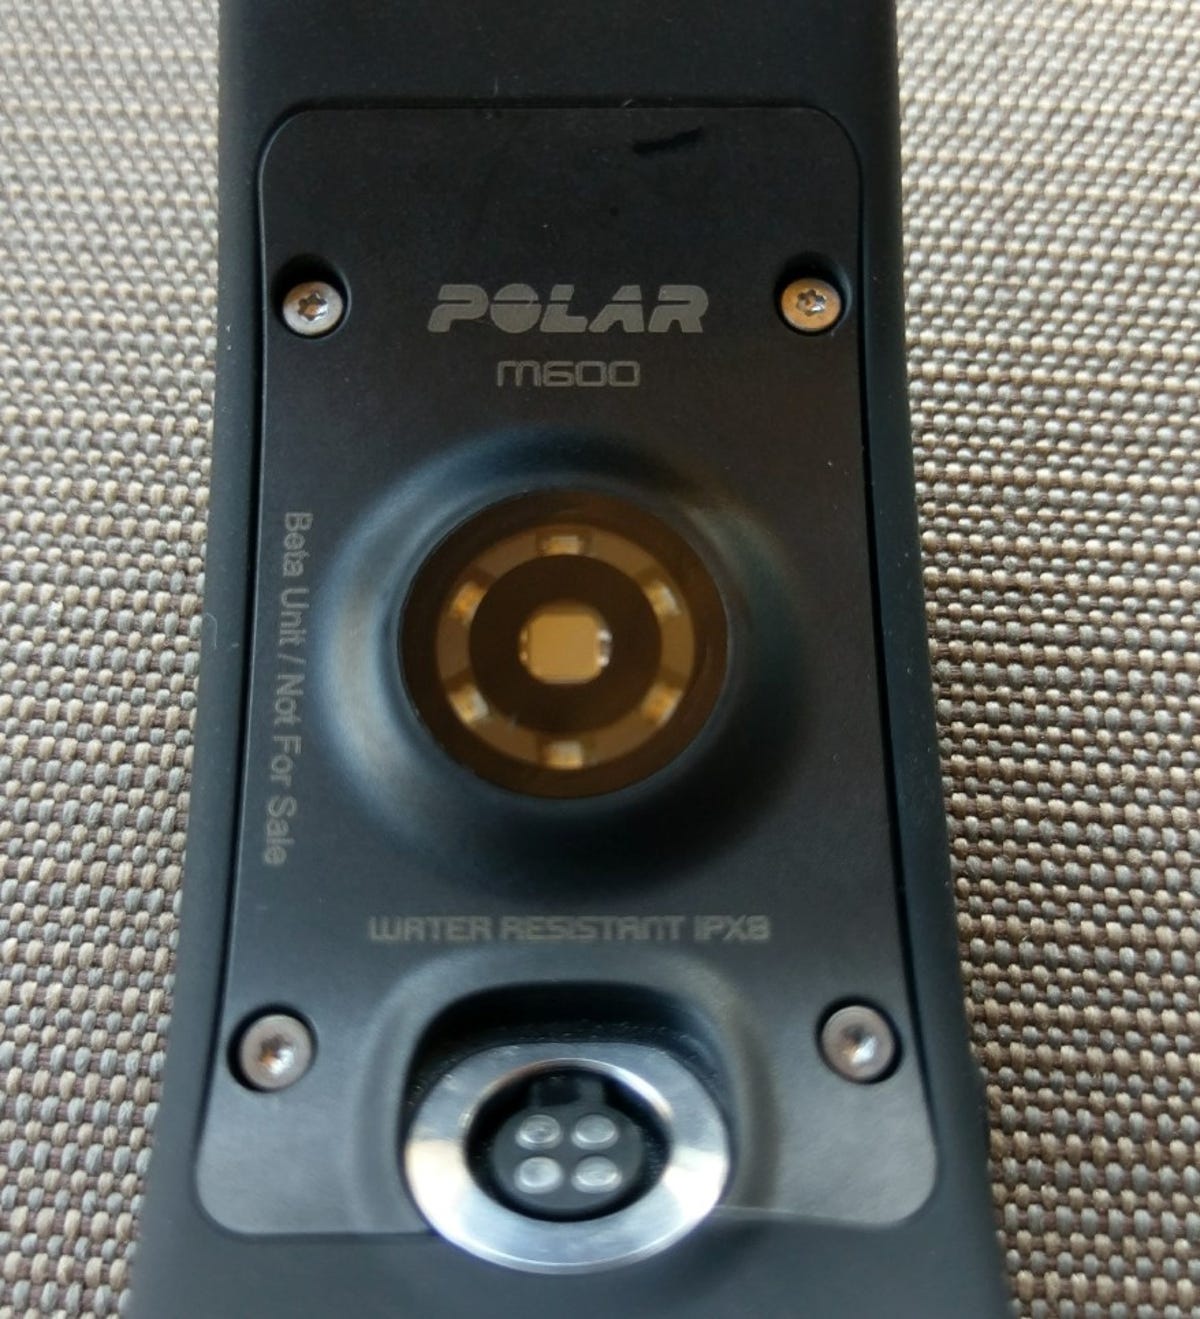 polar-m600-5.jpg